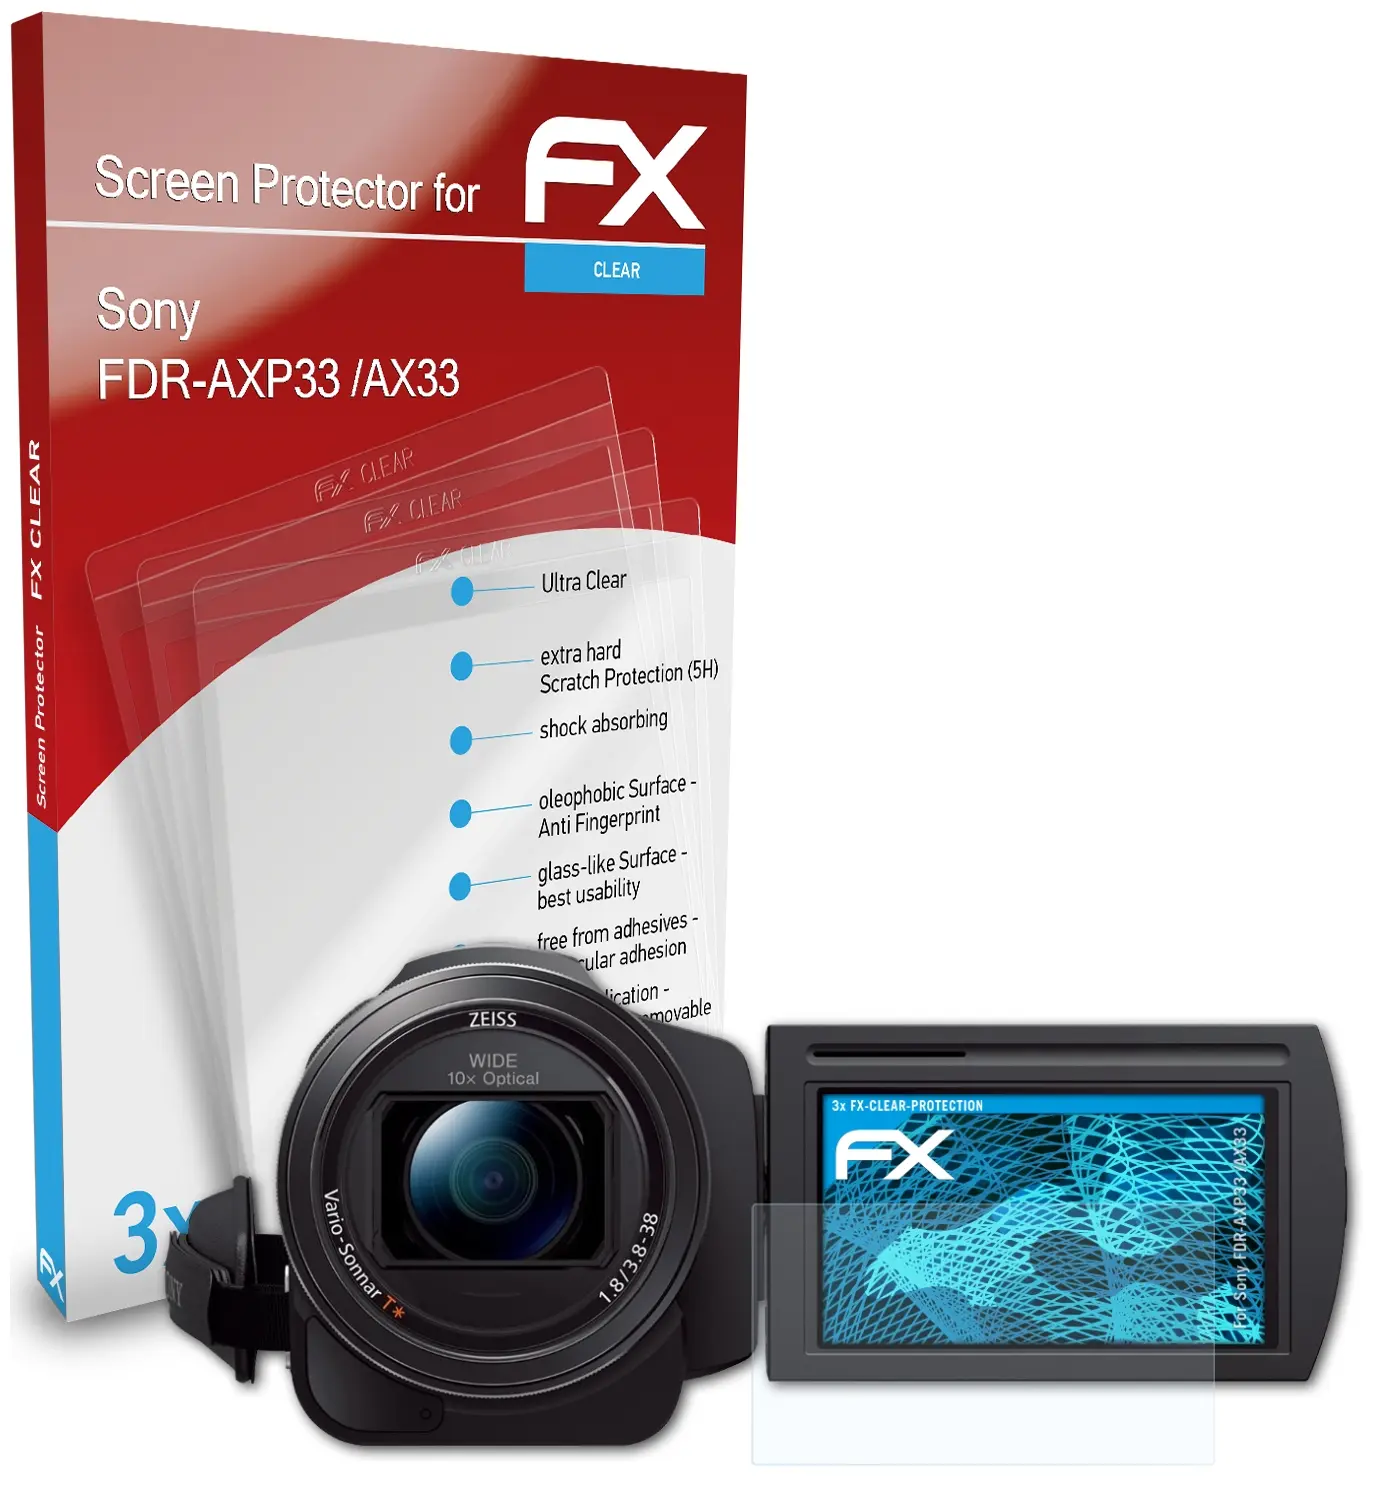 Sony FDR-AXP33 /AX33 1